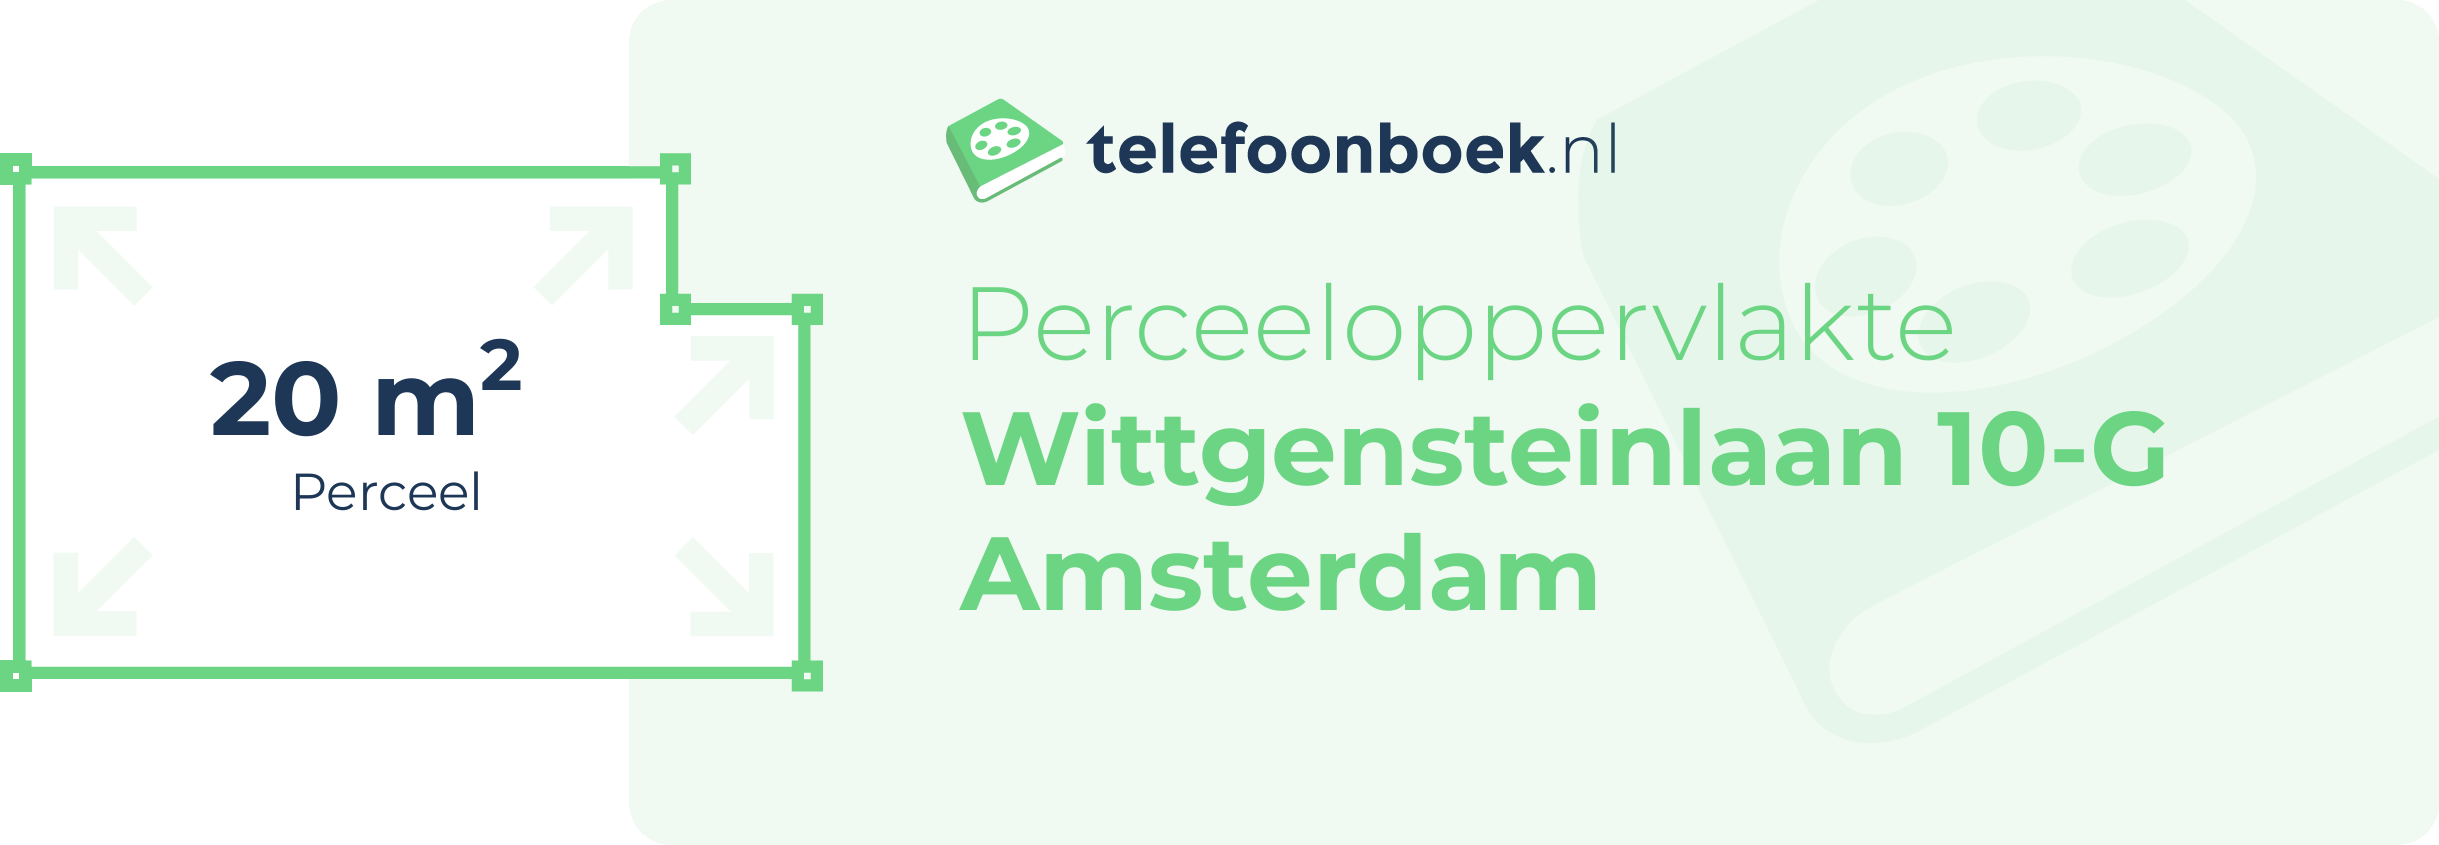 Perceeloppervlakte Wittgensteinlaan 10-G Amsterdam